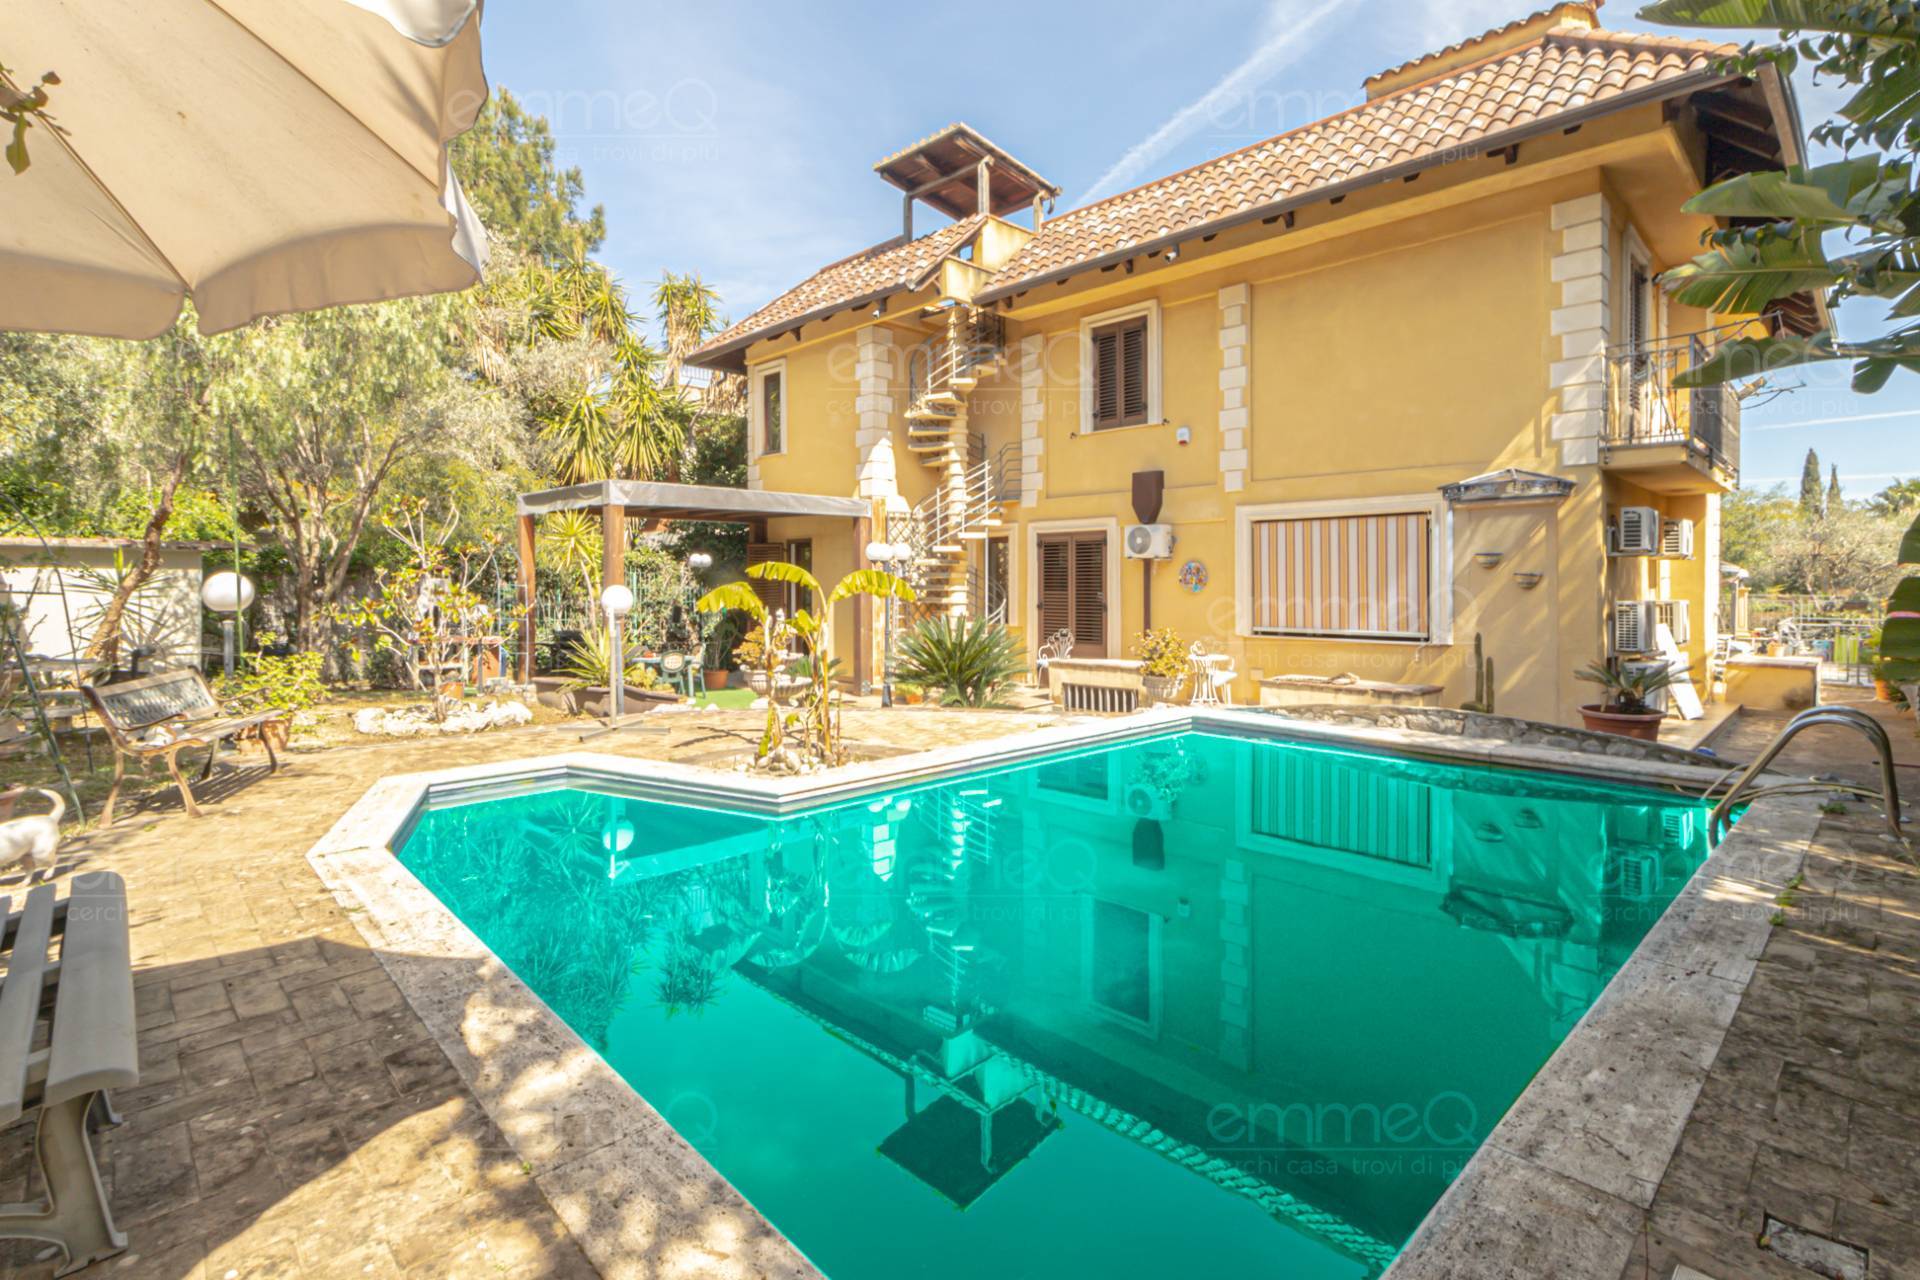 Villa in vendita a Palermo, 19 locali, zona Località: Molara, prezzo € 570.000 | PortaleAgenzieImmobiliari.it